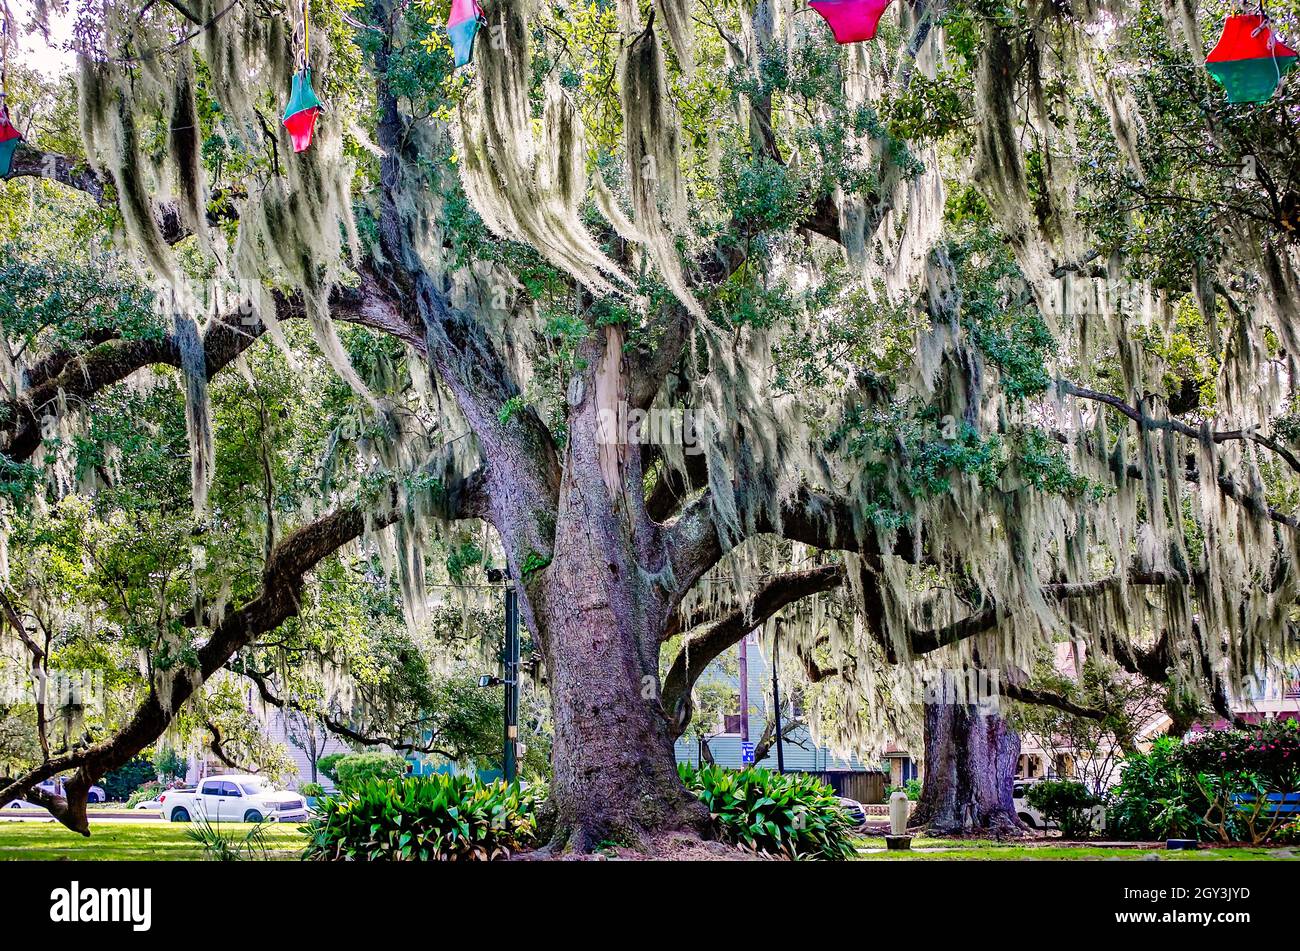 Im New Orleans City Park, 14. November 2021, in New Orleans, Louisiana, stehen lebende Eichenbäume mit Moos drapiert. Der 1,300 Hektar große öffentliche Park wurde 1854 gegründet. Stockfoto